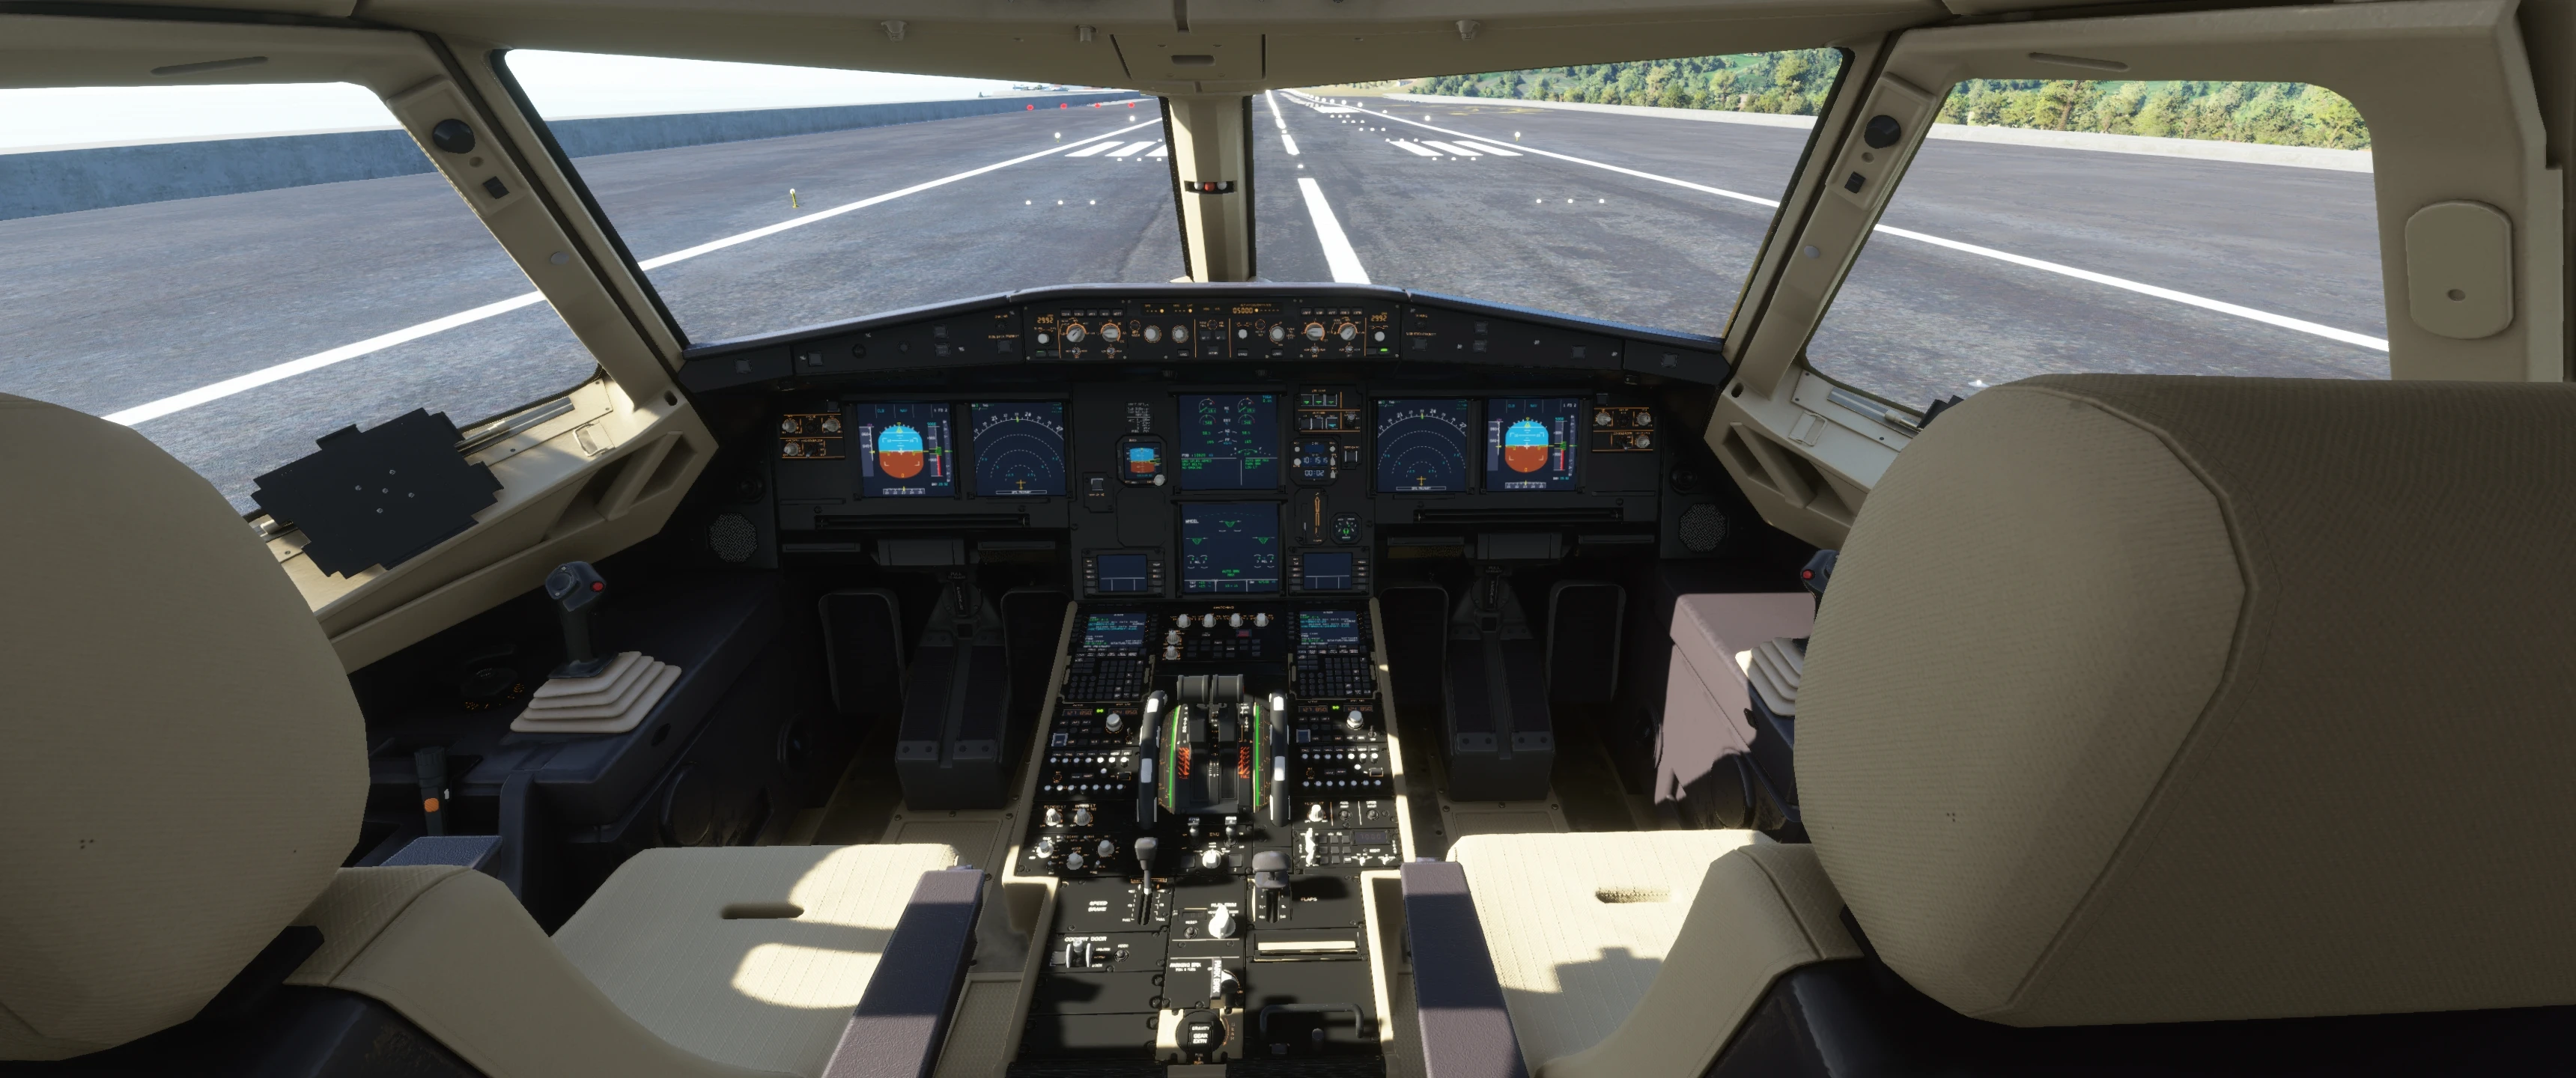 flight simulator cockpit